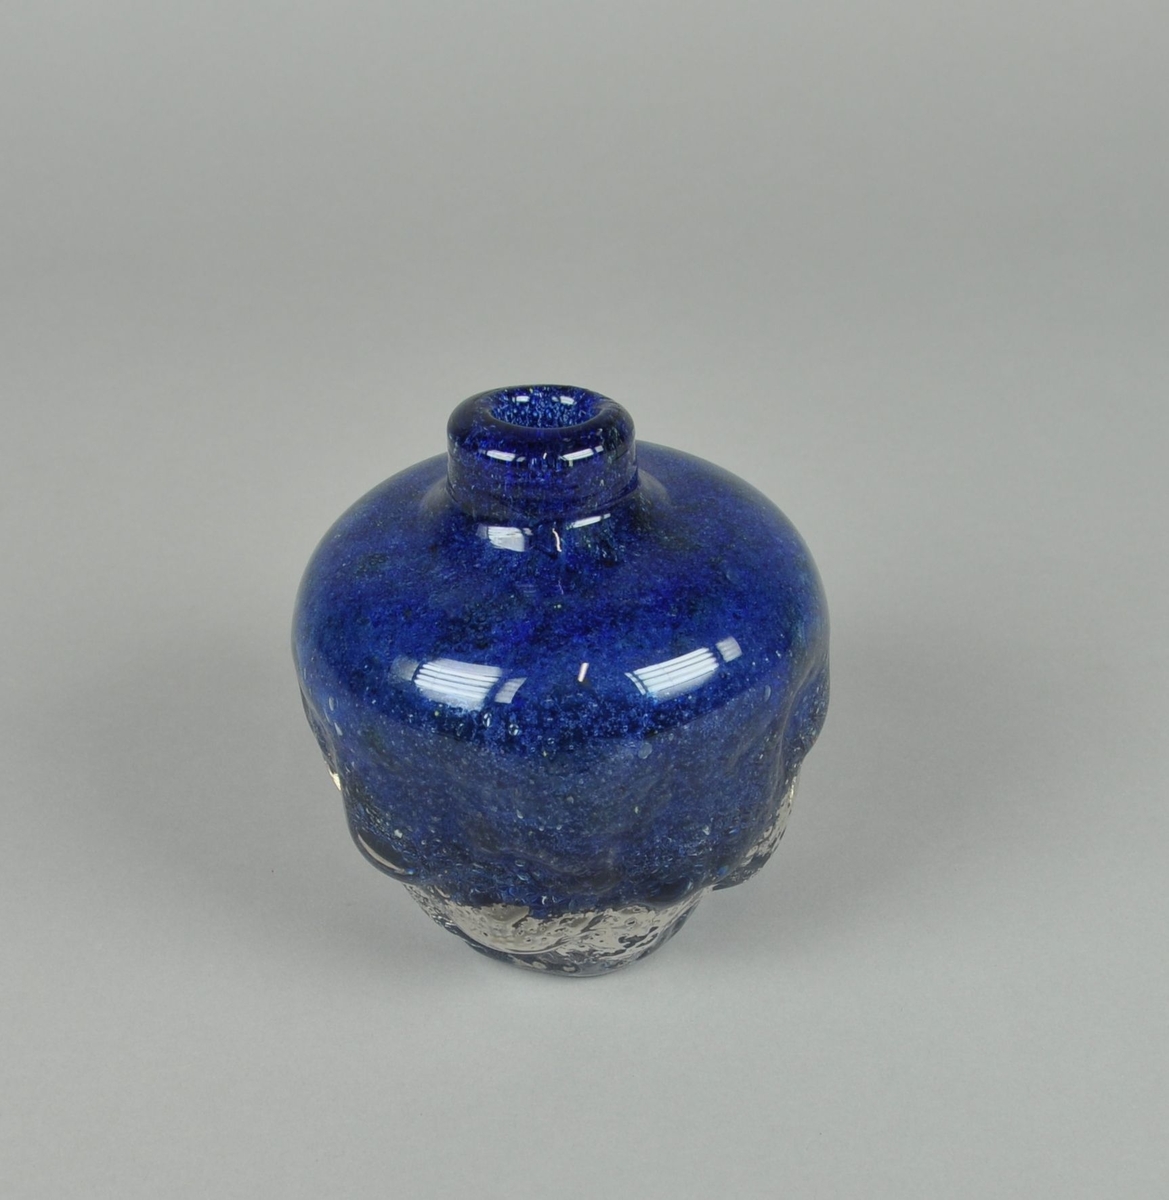 Munnblåst vase av blått glass med klart overfangsglass. Rund form med lav hals. Vasen er farget blå og har boblende tekstur på nedre del av korpus.